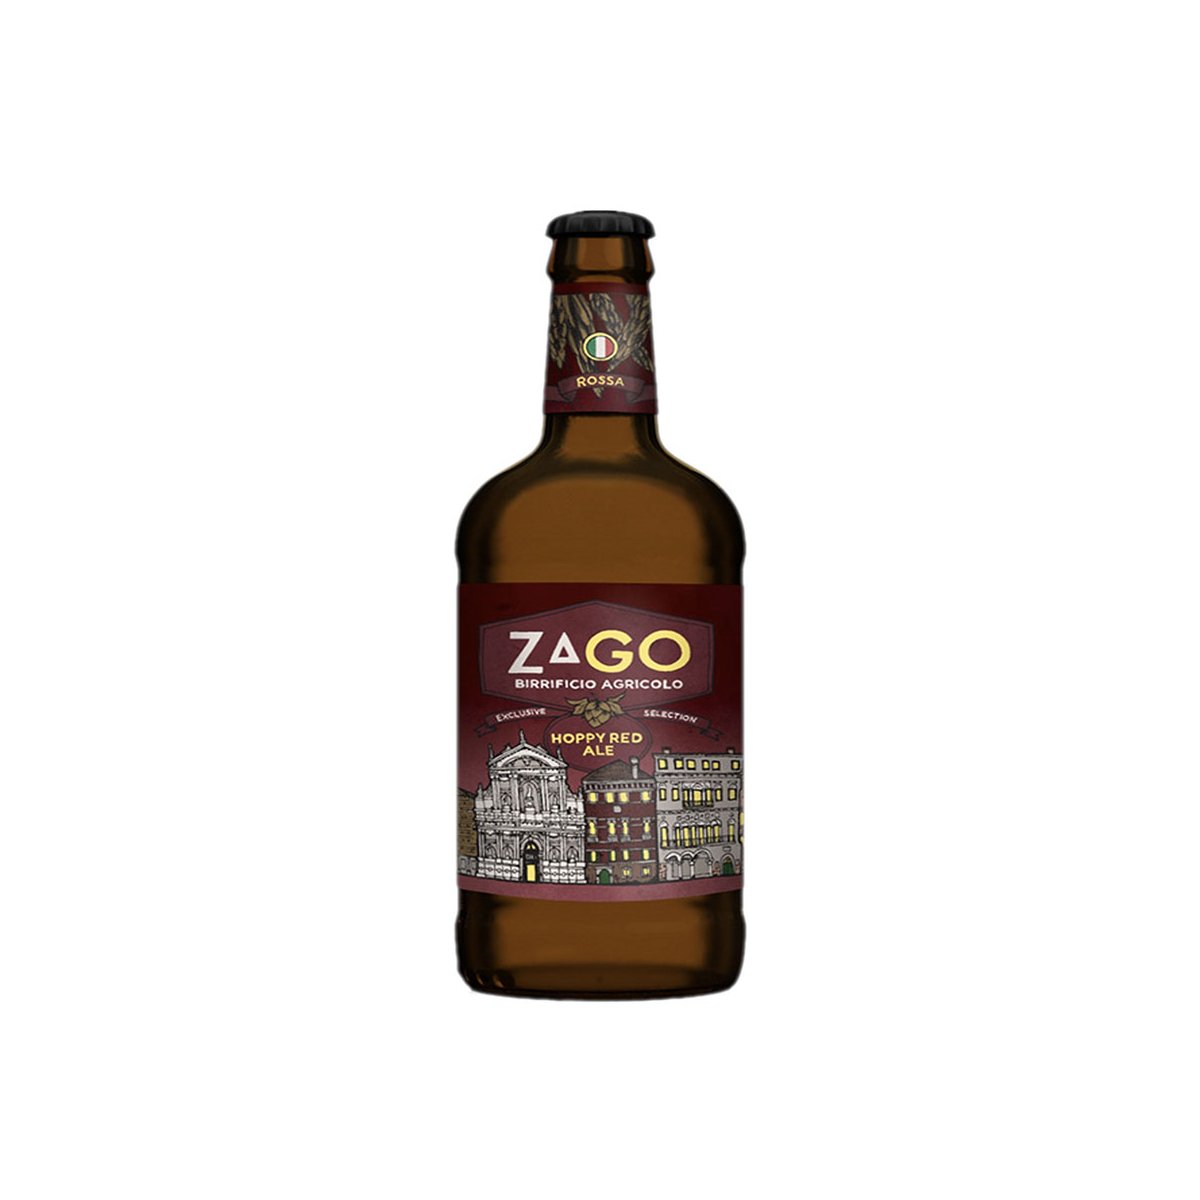 Hoppy Red Ale  Zago - Friuli-Venezia Giulia